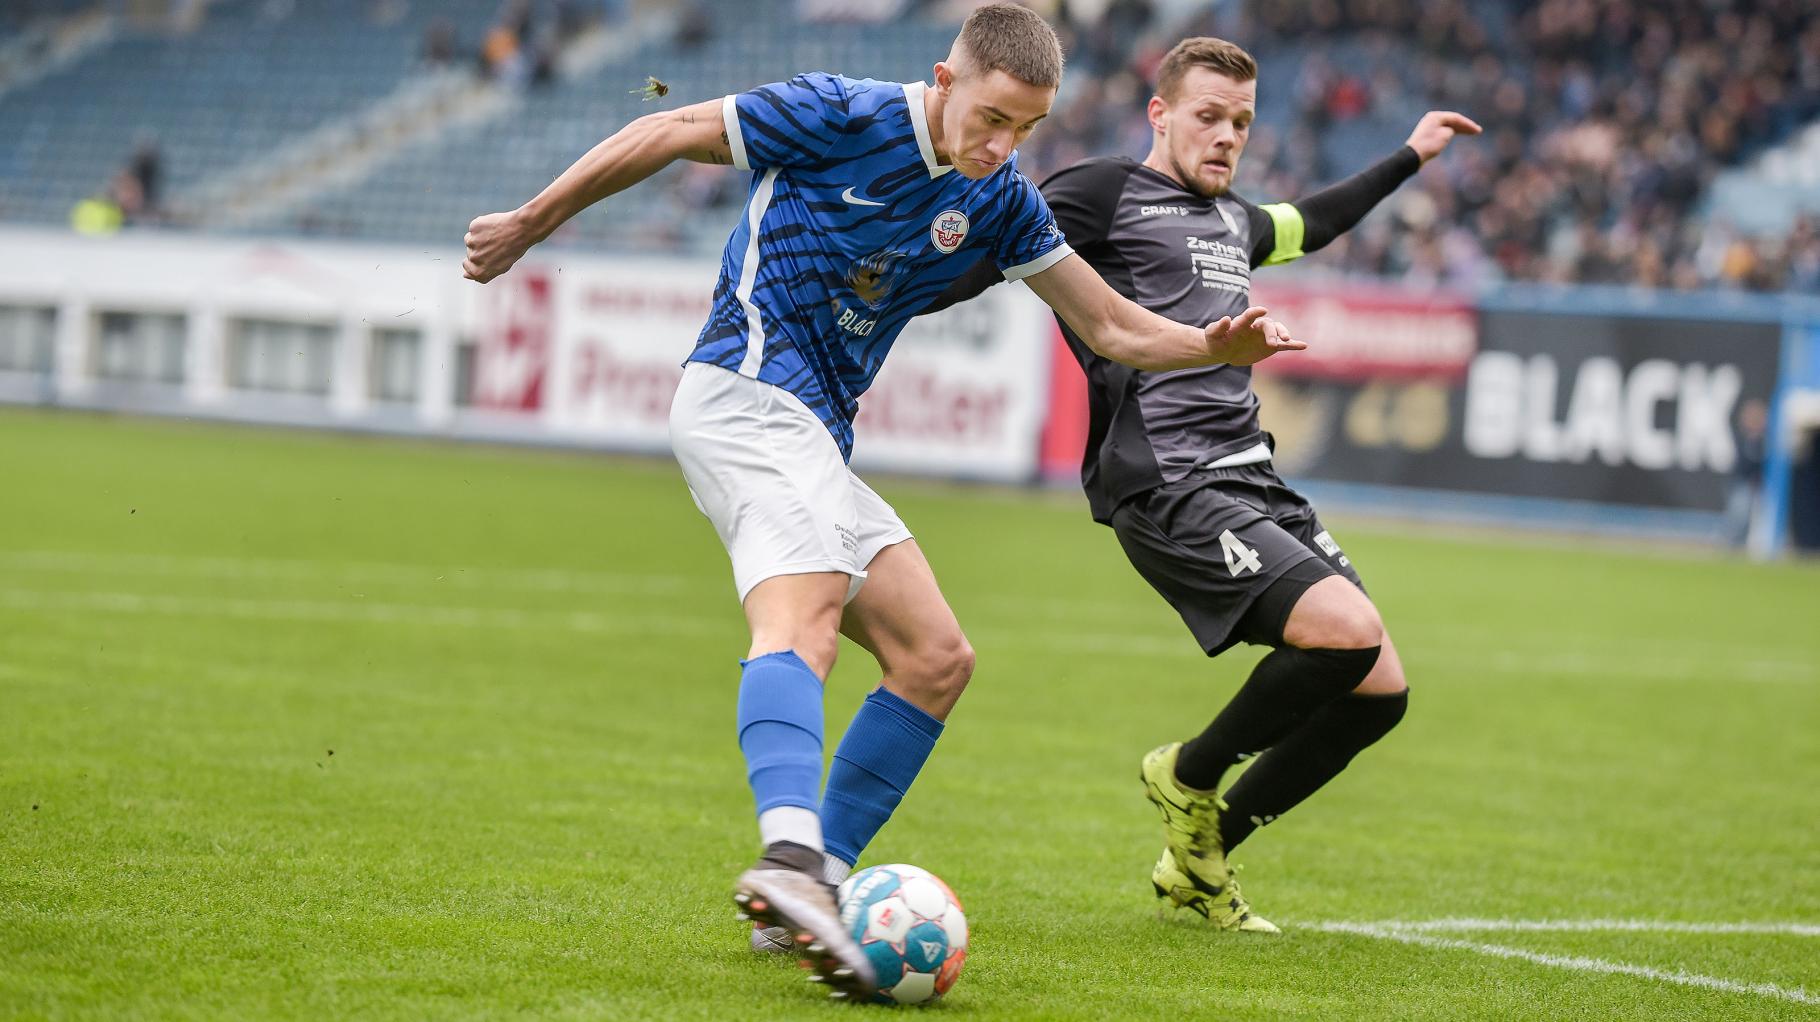 U23 des FC Hansa Rostock verspielt Führung gegen Optik Rathenow